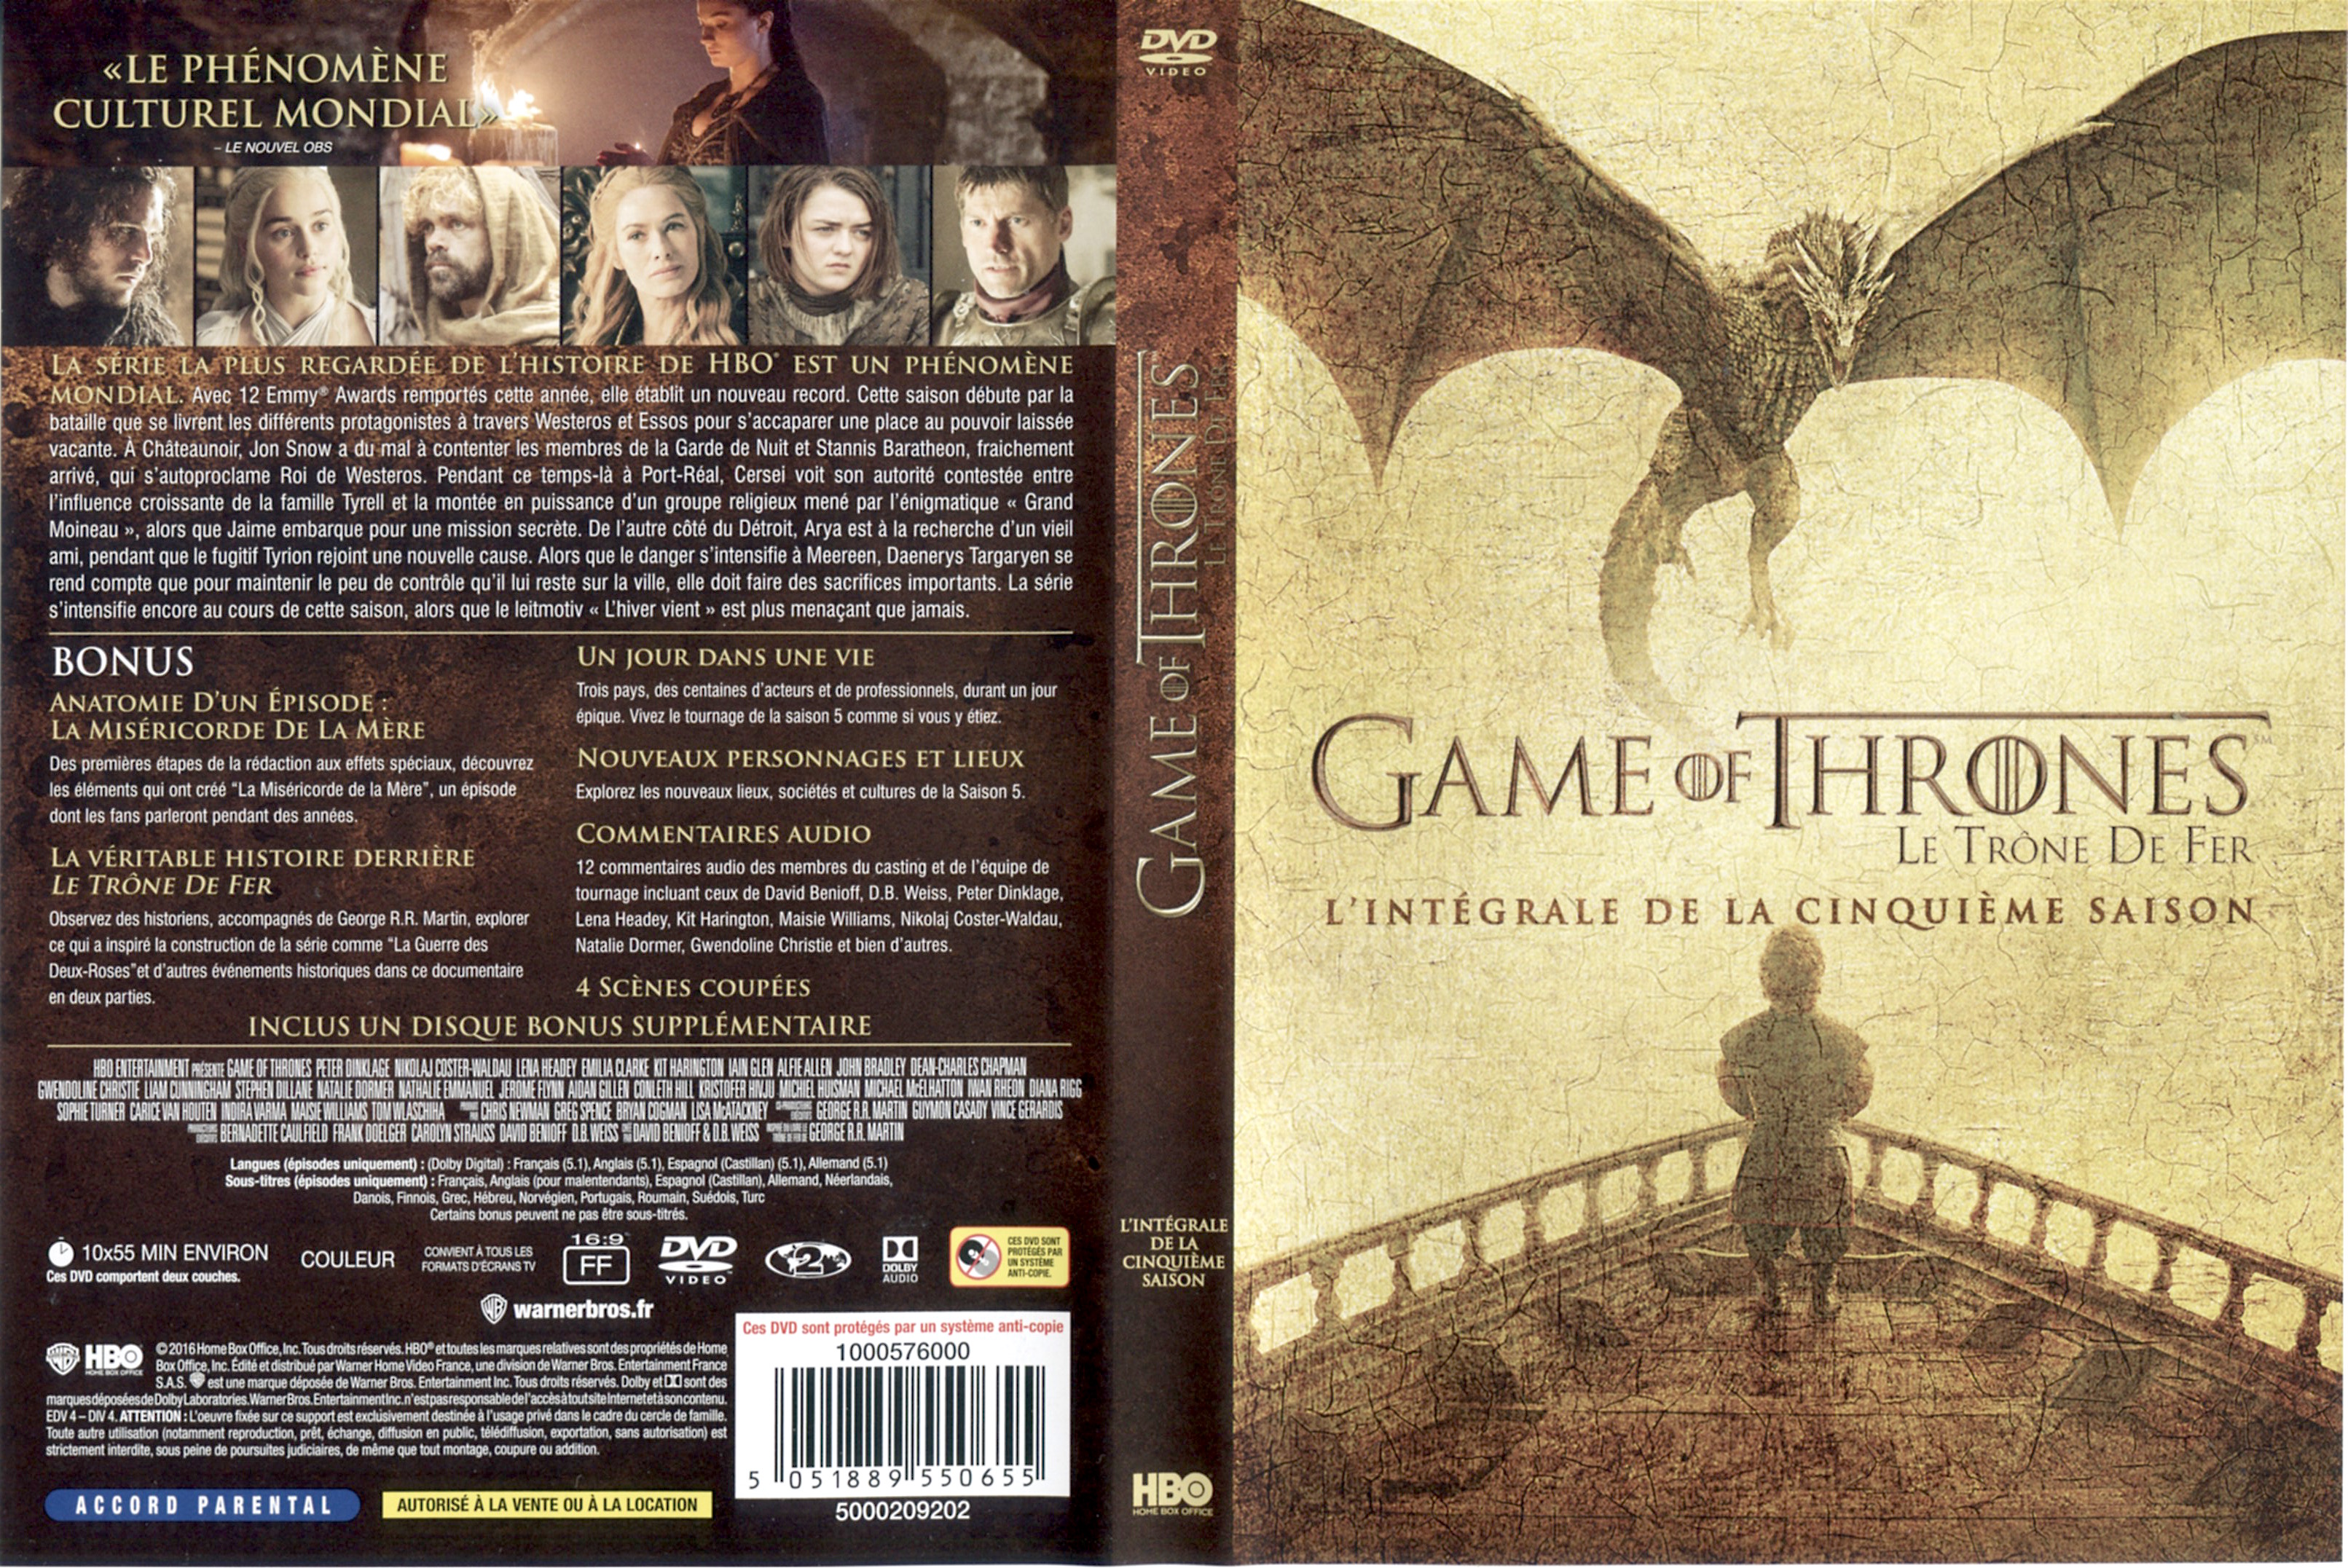 Jaquette DVD Game of thrones (le trone de fer) Saison 5